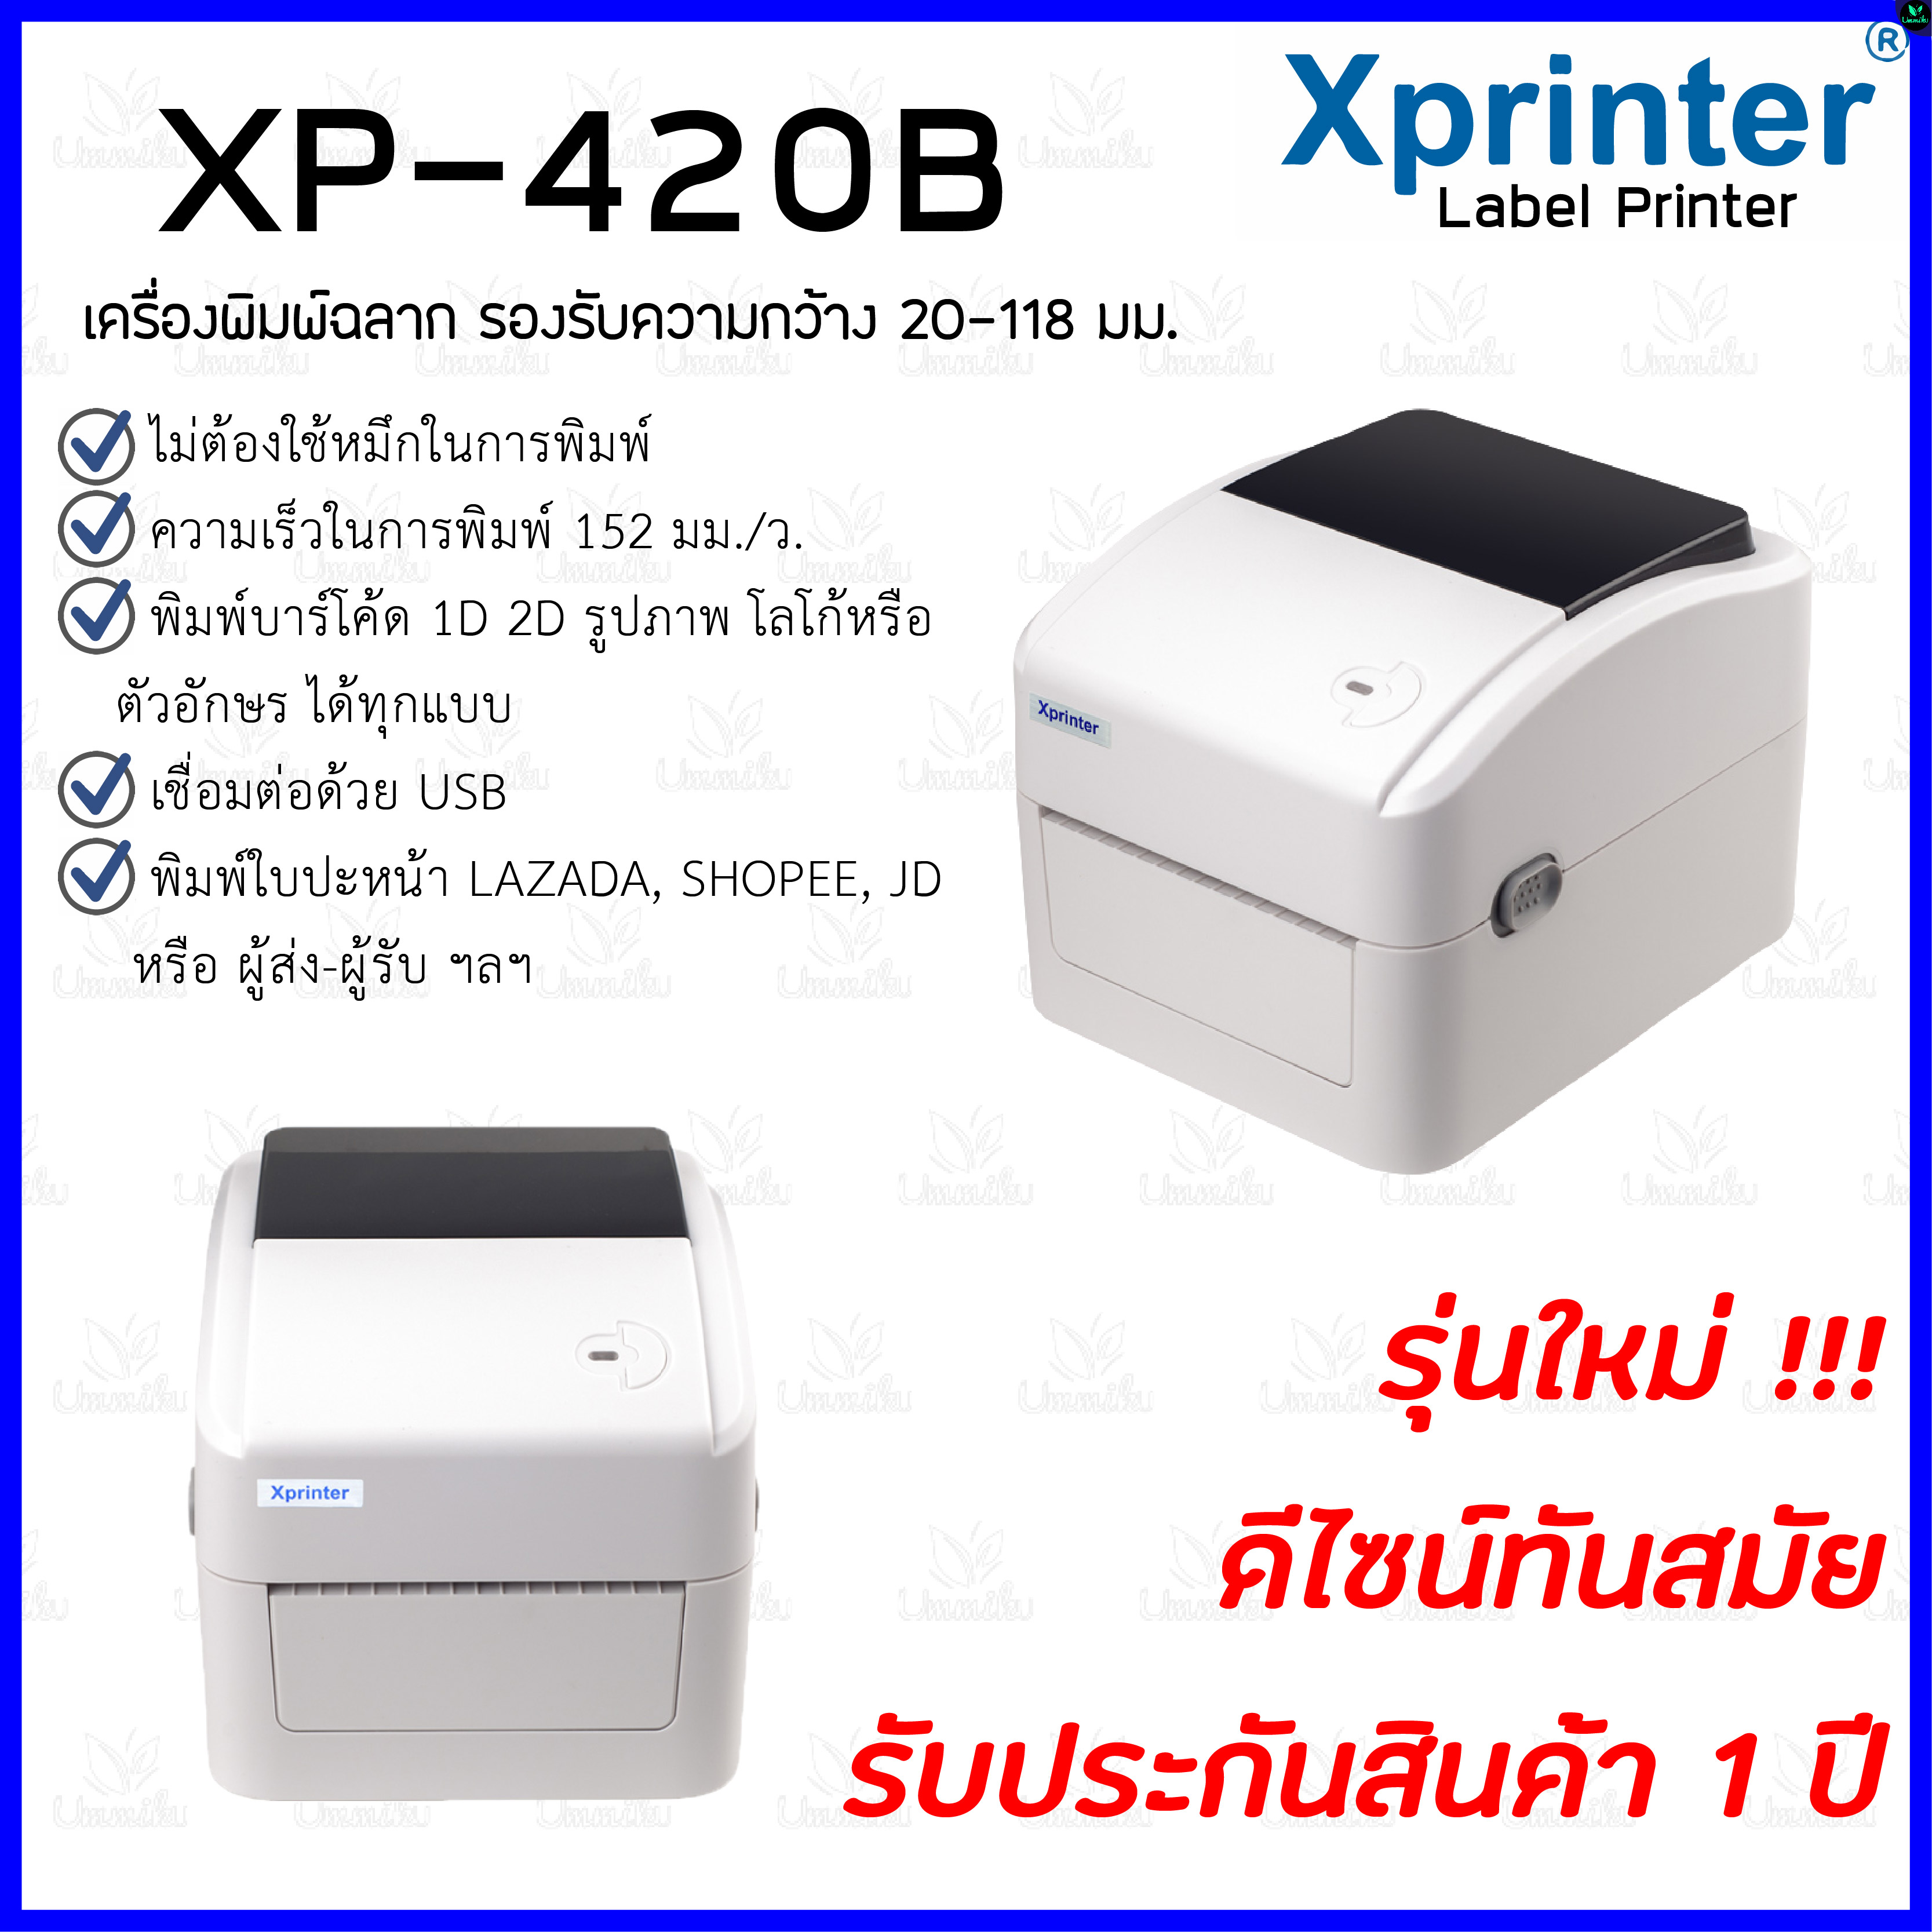 เครื่องพิมพ์ฉลาก, เครื่องพิมพ์บาร์โค๊ด, เครื่องพิมพ์ใบปะหน้าพัสดุ  Xprinter รุ่น XP-420B รองรับขนาด 20-108 มม. (Label Printer Thermal 4 Inch)